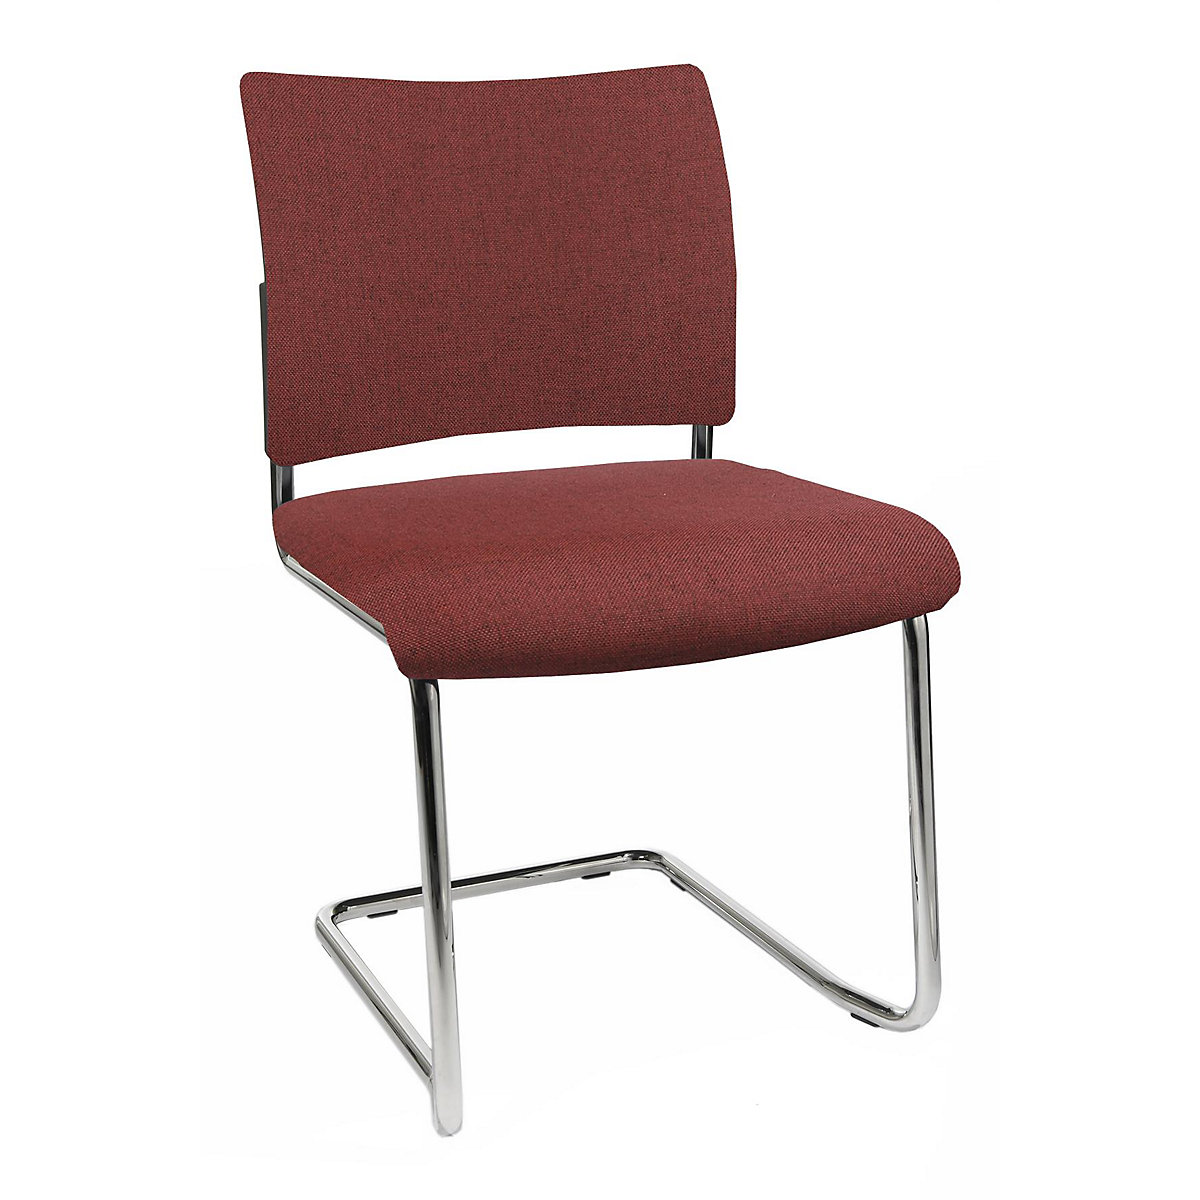 Bezoekersstoel, stapelbaar – Topstar, sledestoel, rugleuning met textielbekleding, VE = 2 stuks, bordeaux-8